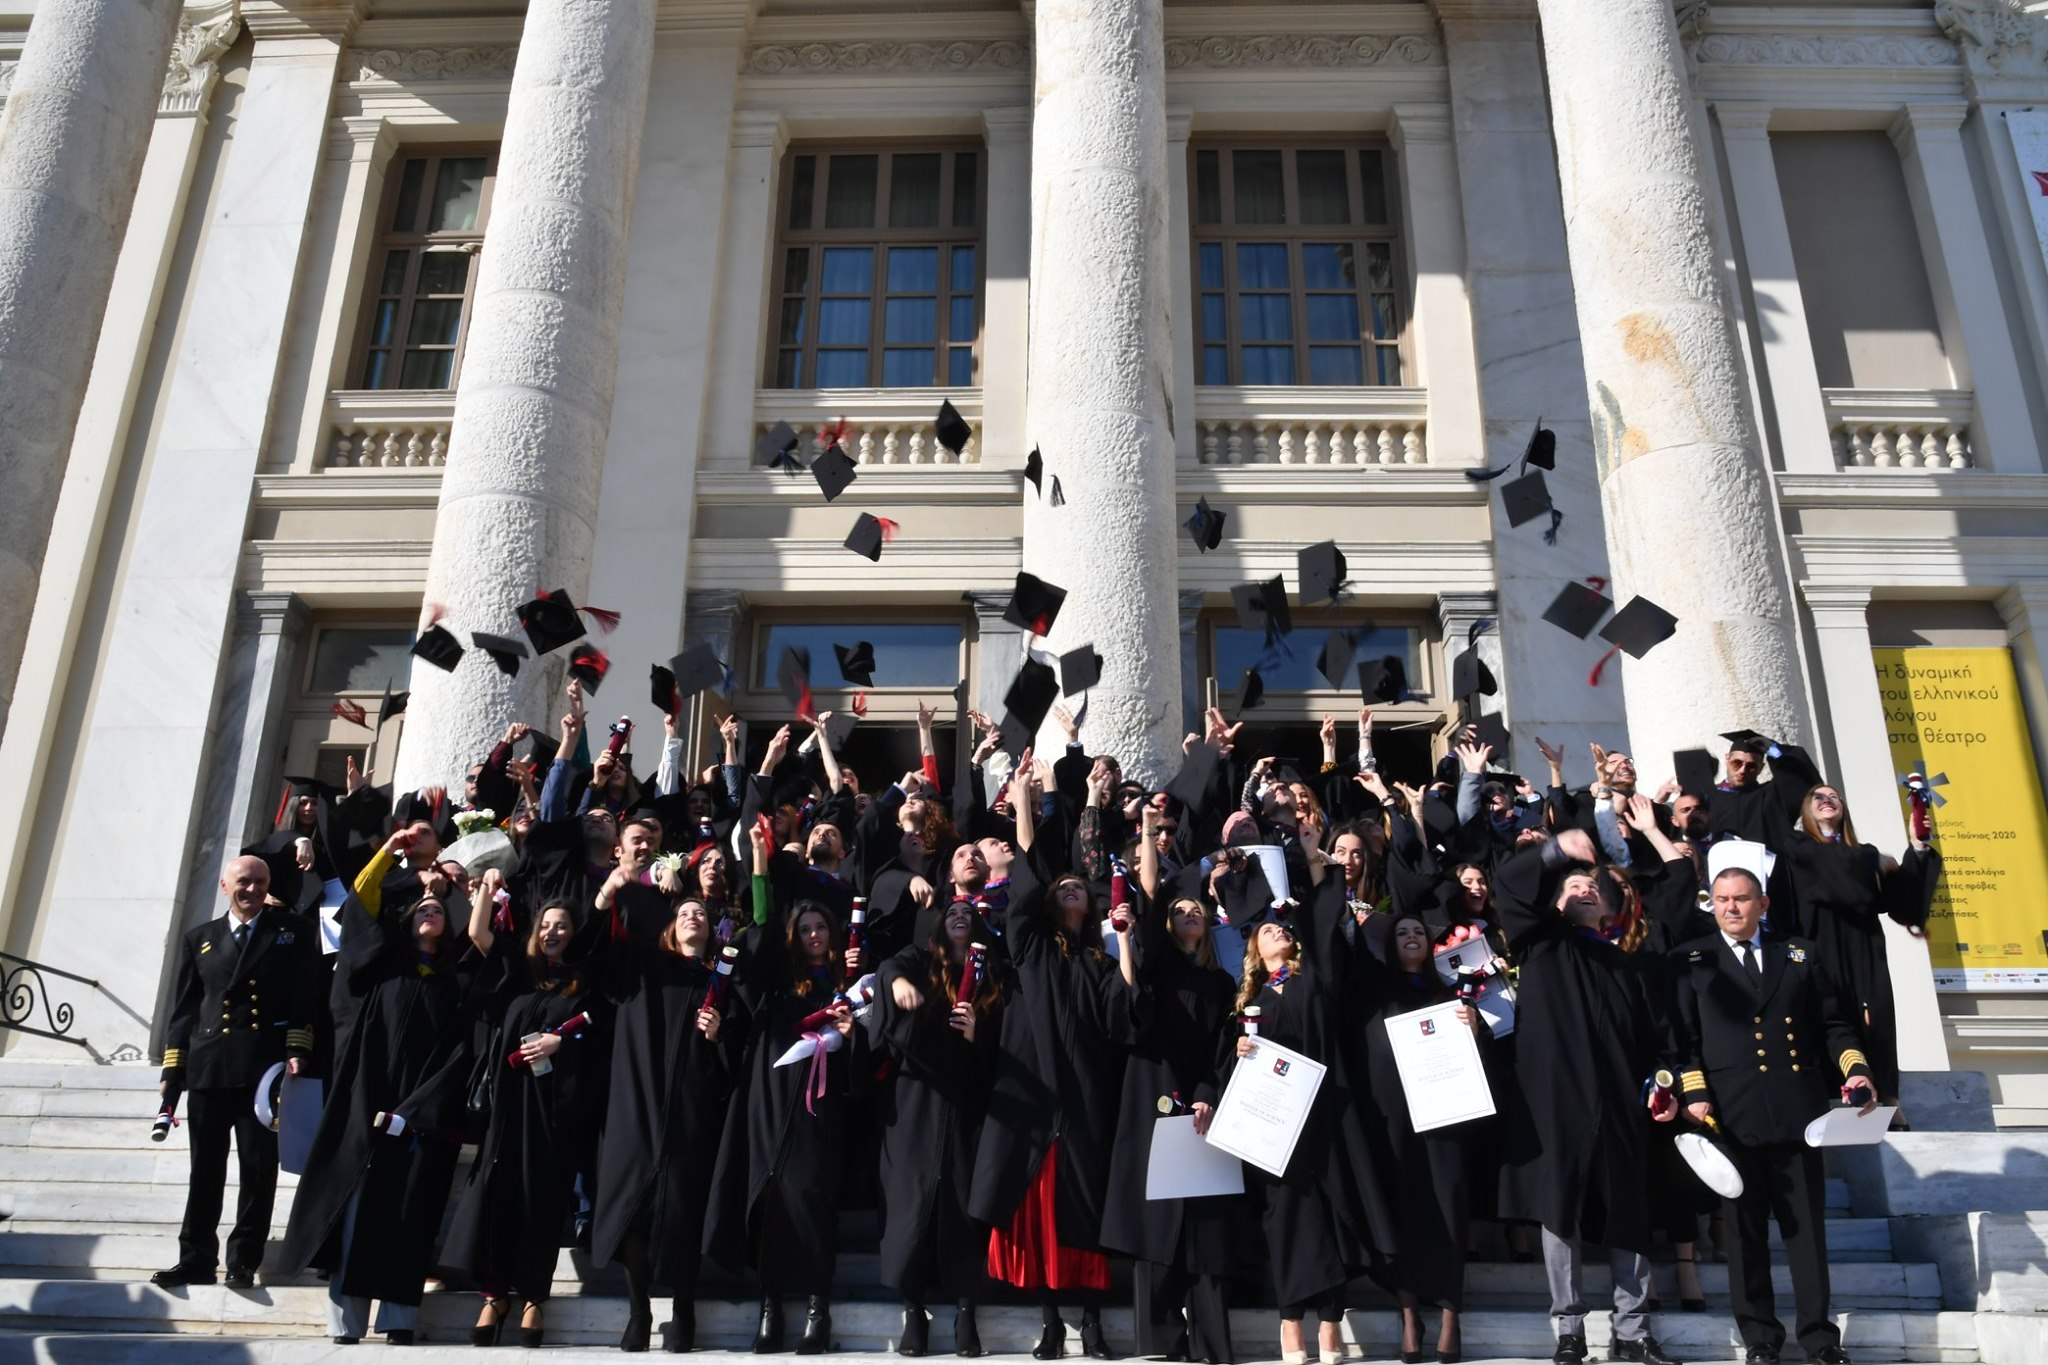 Ορκωμοσία αποφοίτων Μεταπτυχιακών Προγραμμάτων/ Ceremony for Graduates of Postgraduate Programs